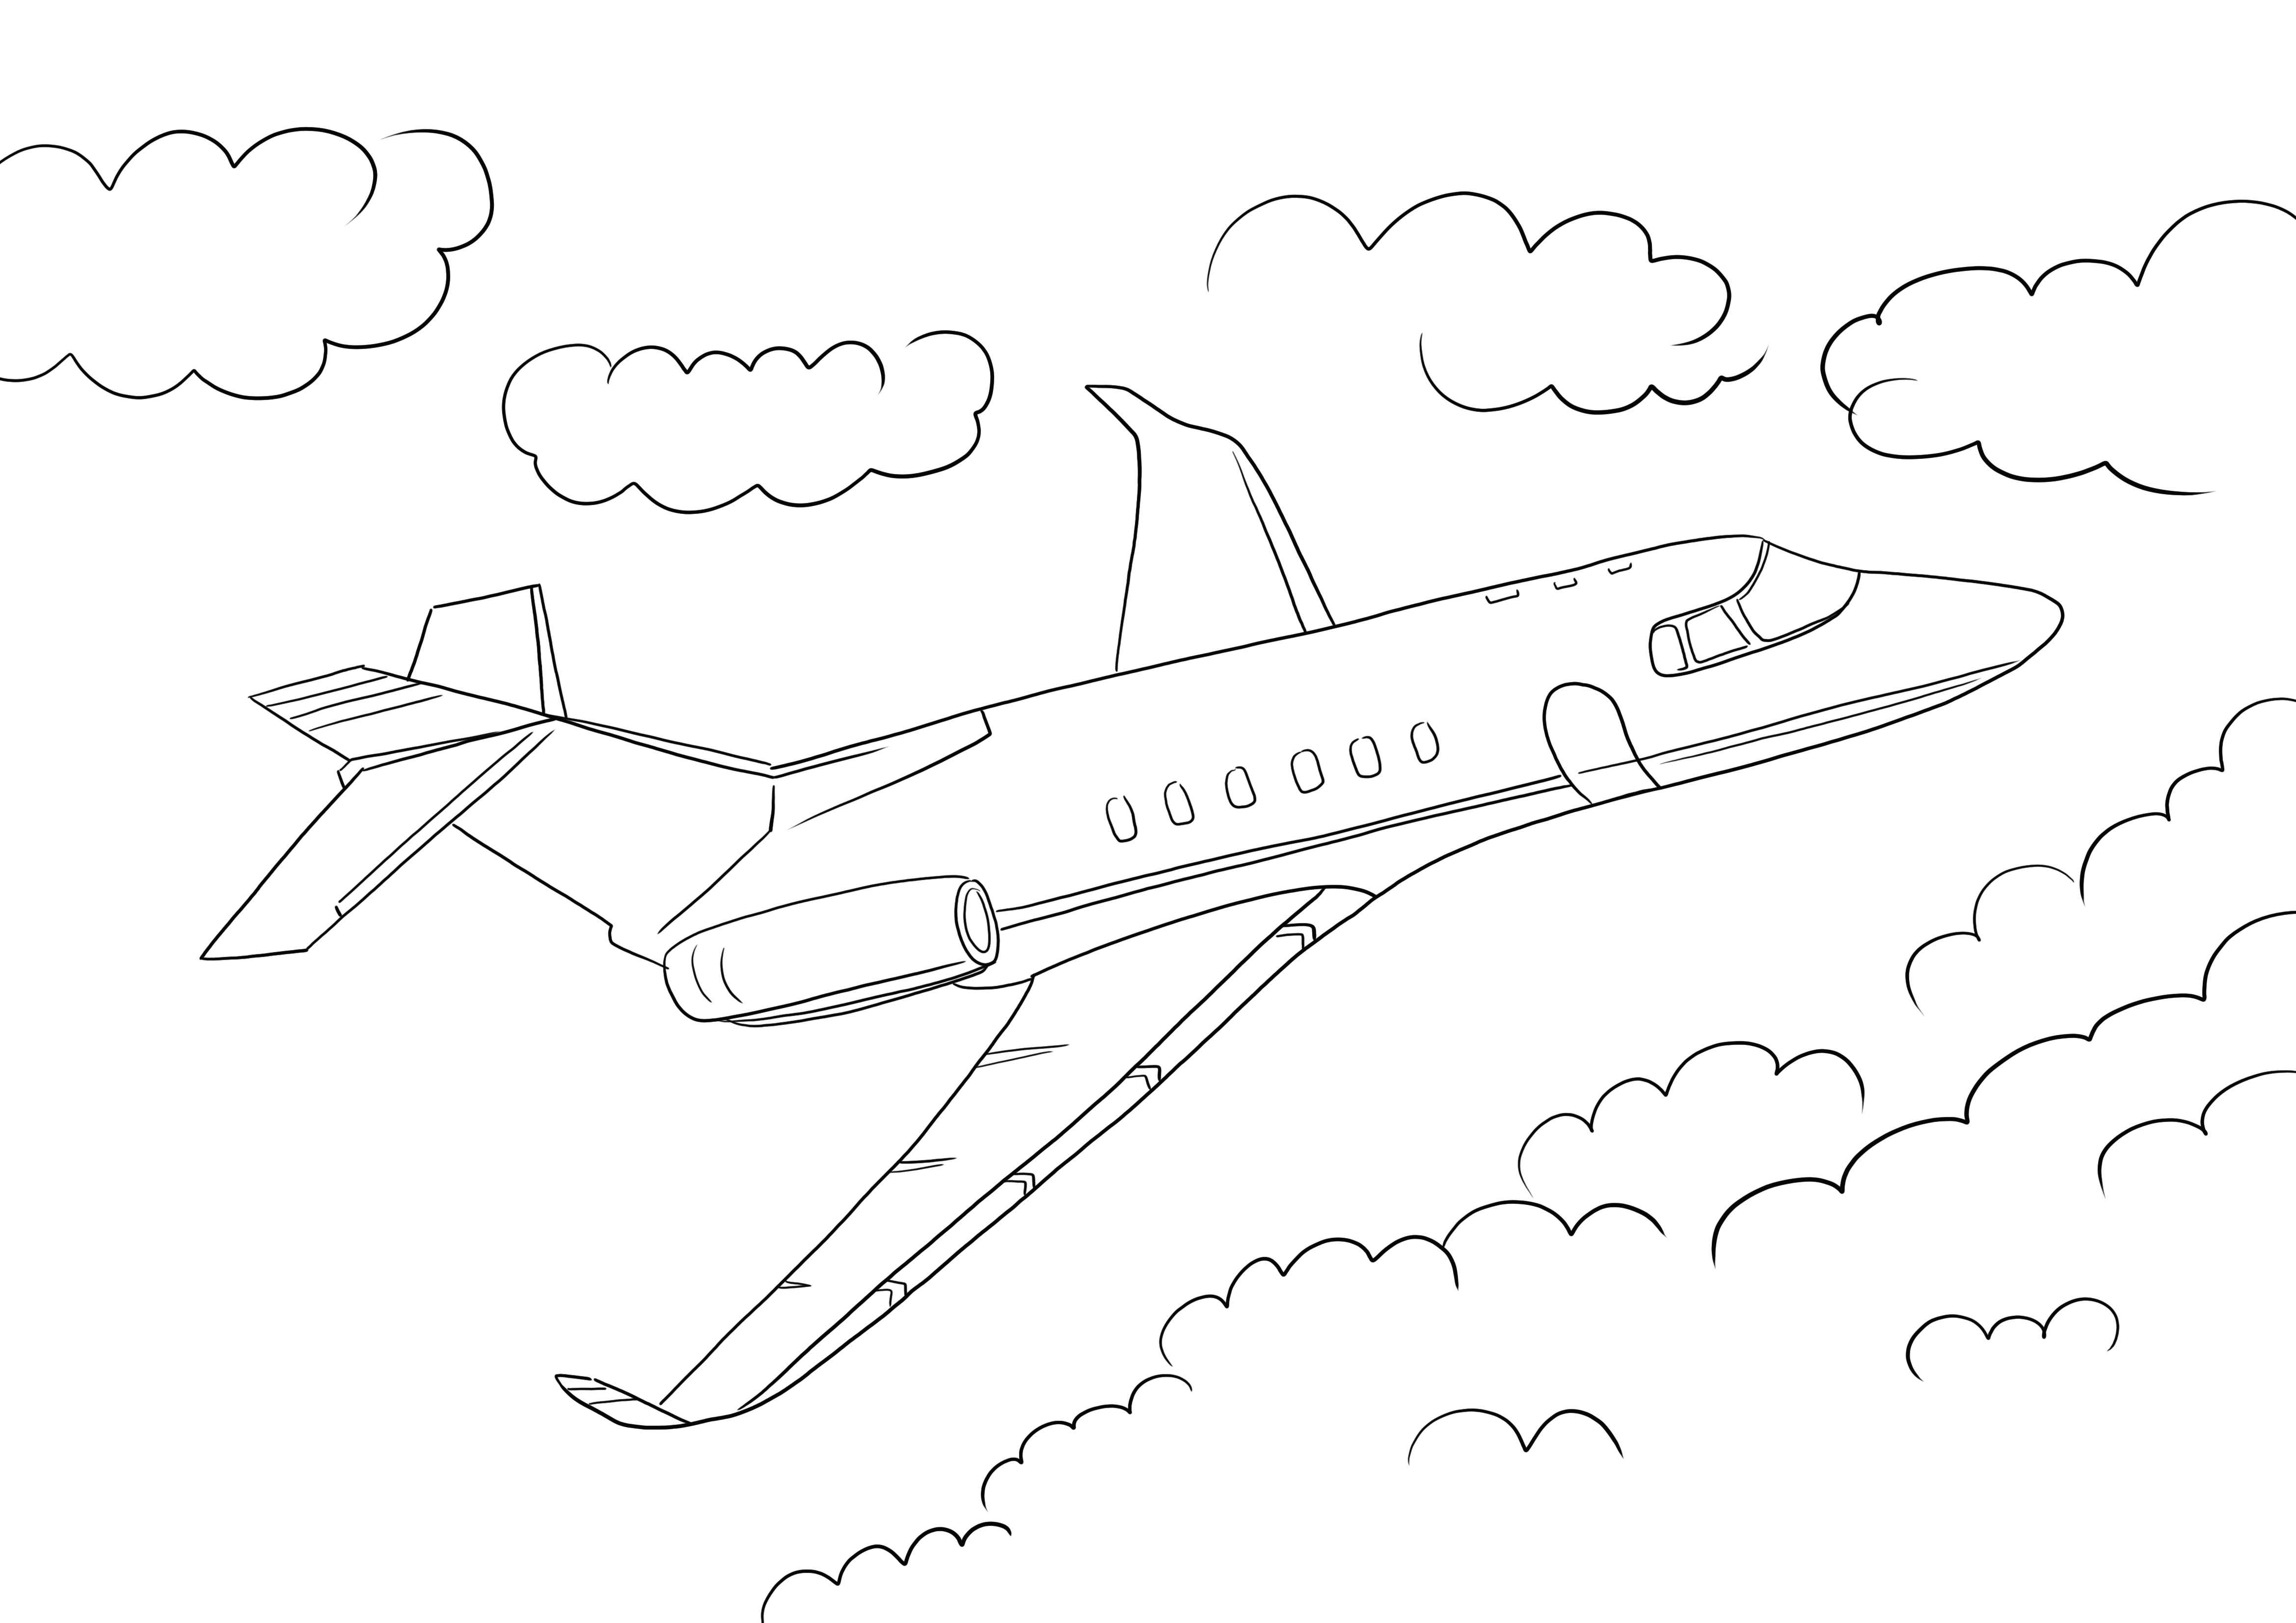 Easy Jet Airplane ilmaiseksi tulostettava ja väritettävä arkki kaiken ikäisille lapsille